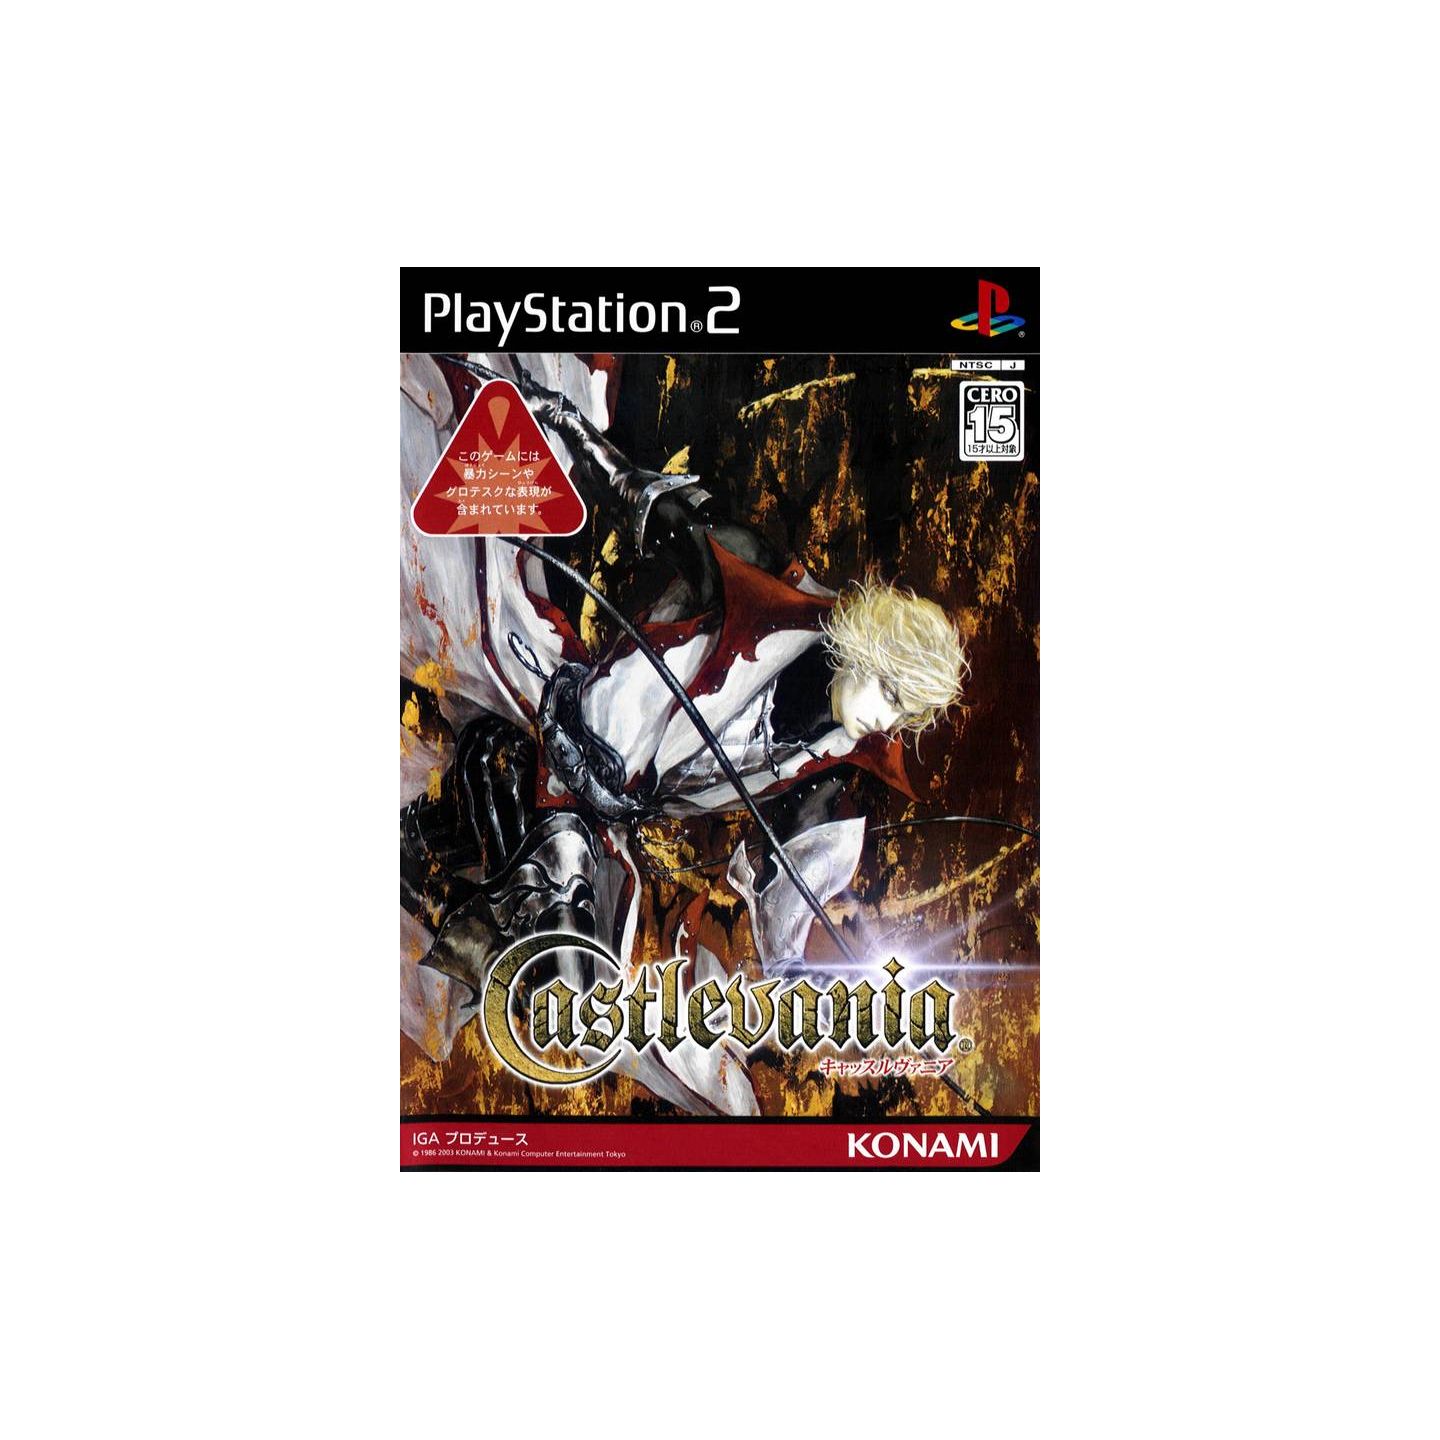 Konami - Castlevania: Lament of Innocence For Playstation 2